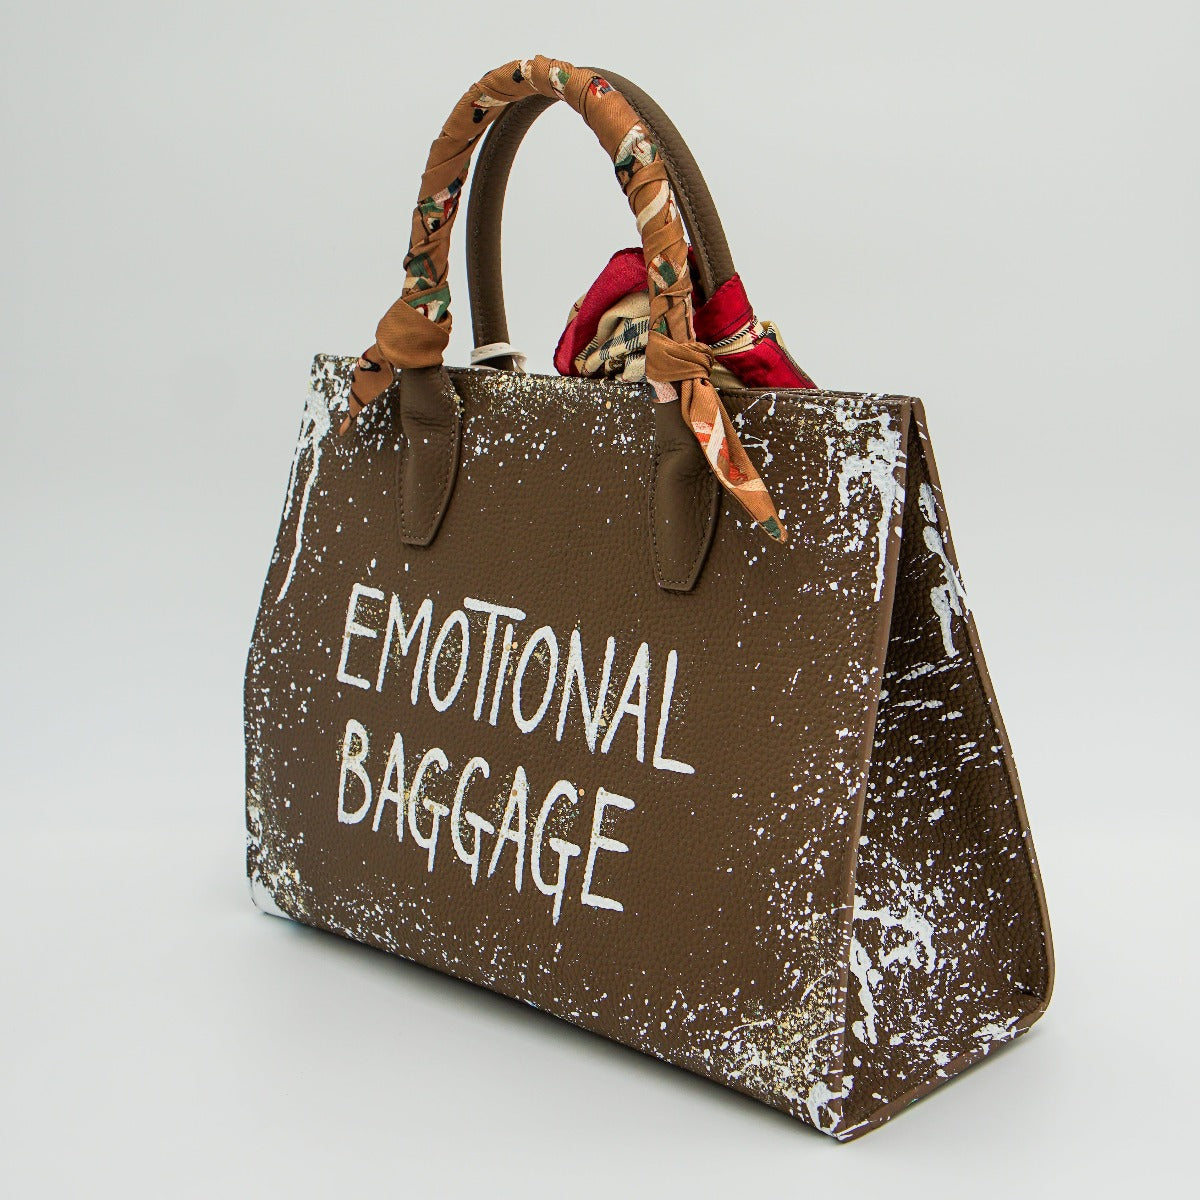 Anca Barbu Sophia Bag, Emotional Baggage, White